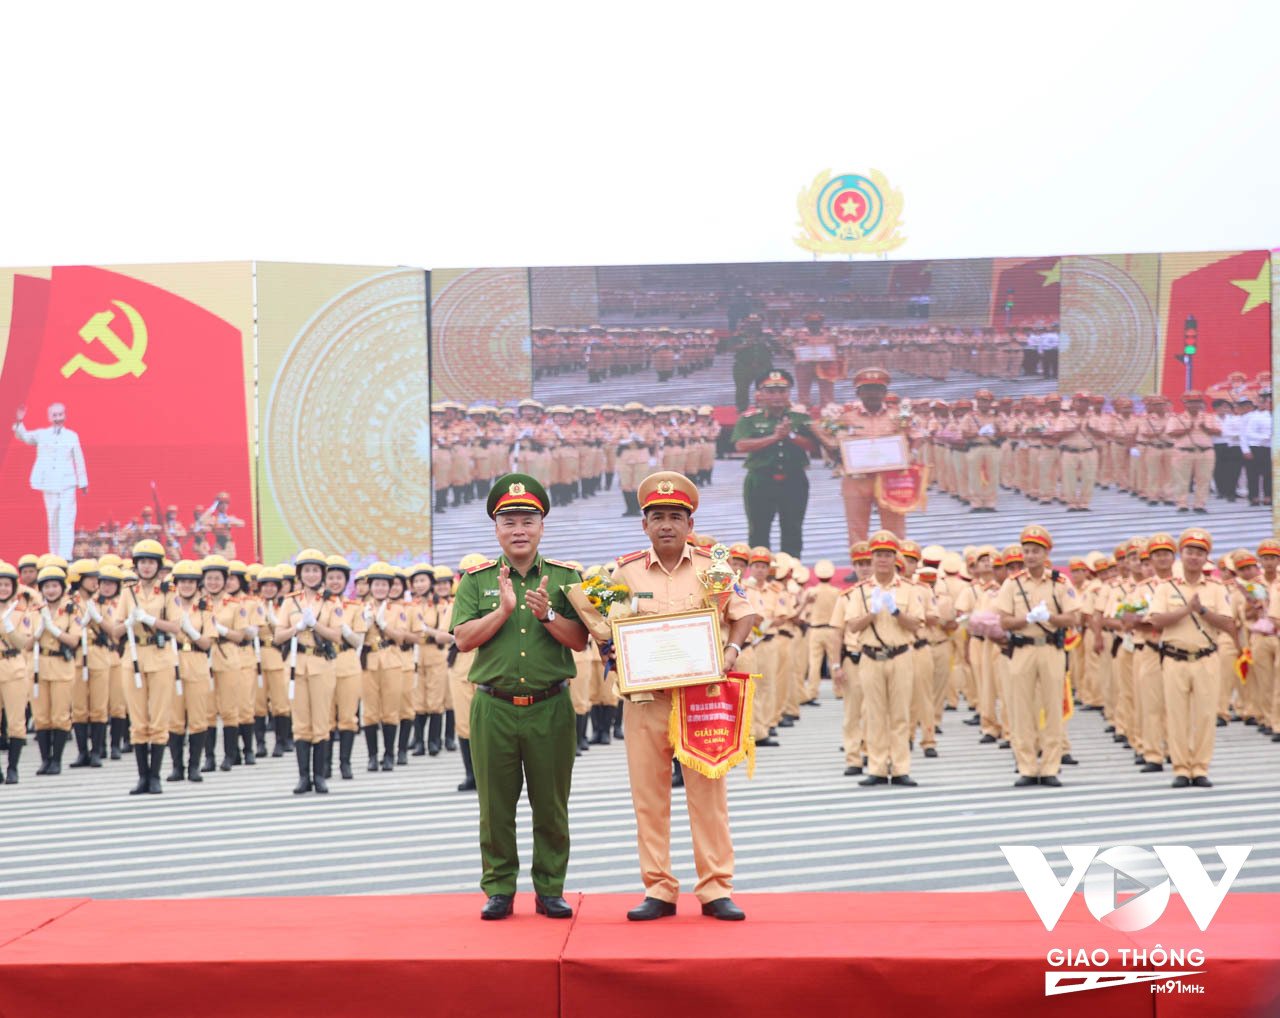 Về giải cá nhân, Ban Tổ chức đã trao giải Nhất cho Trung uý Phạm Thanh Quyền, cán bộ Công an tỉnh Bình Phước